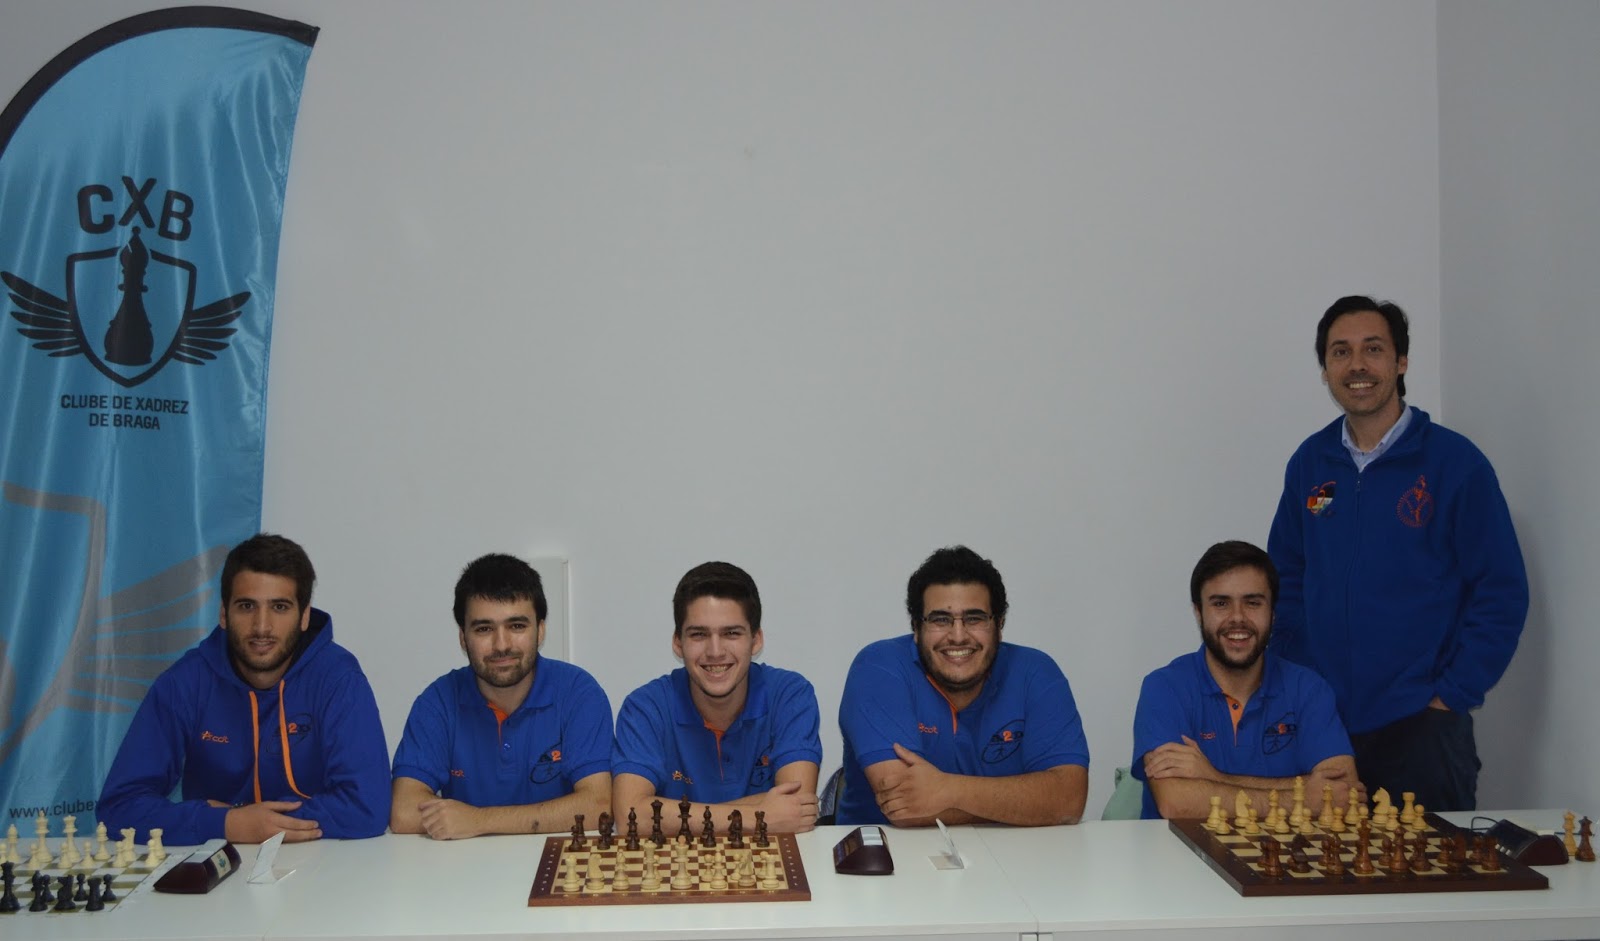 Club De Ajedrez Los Amigos - clube de xadrez 